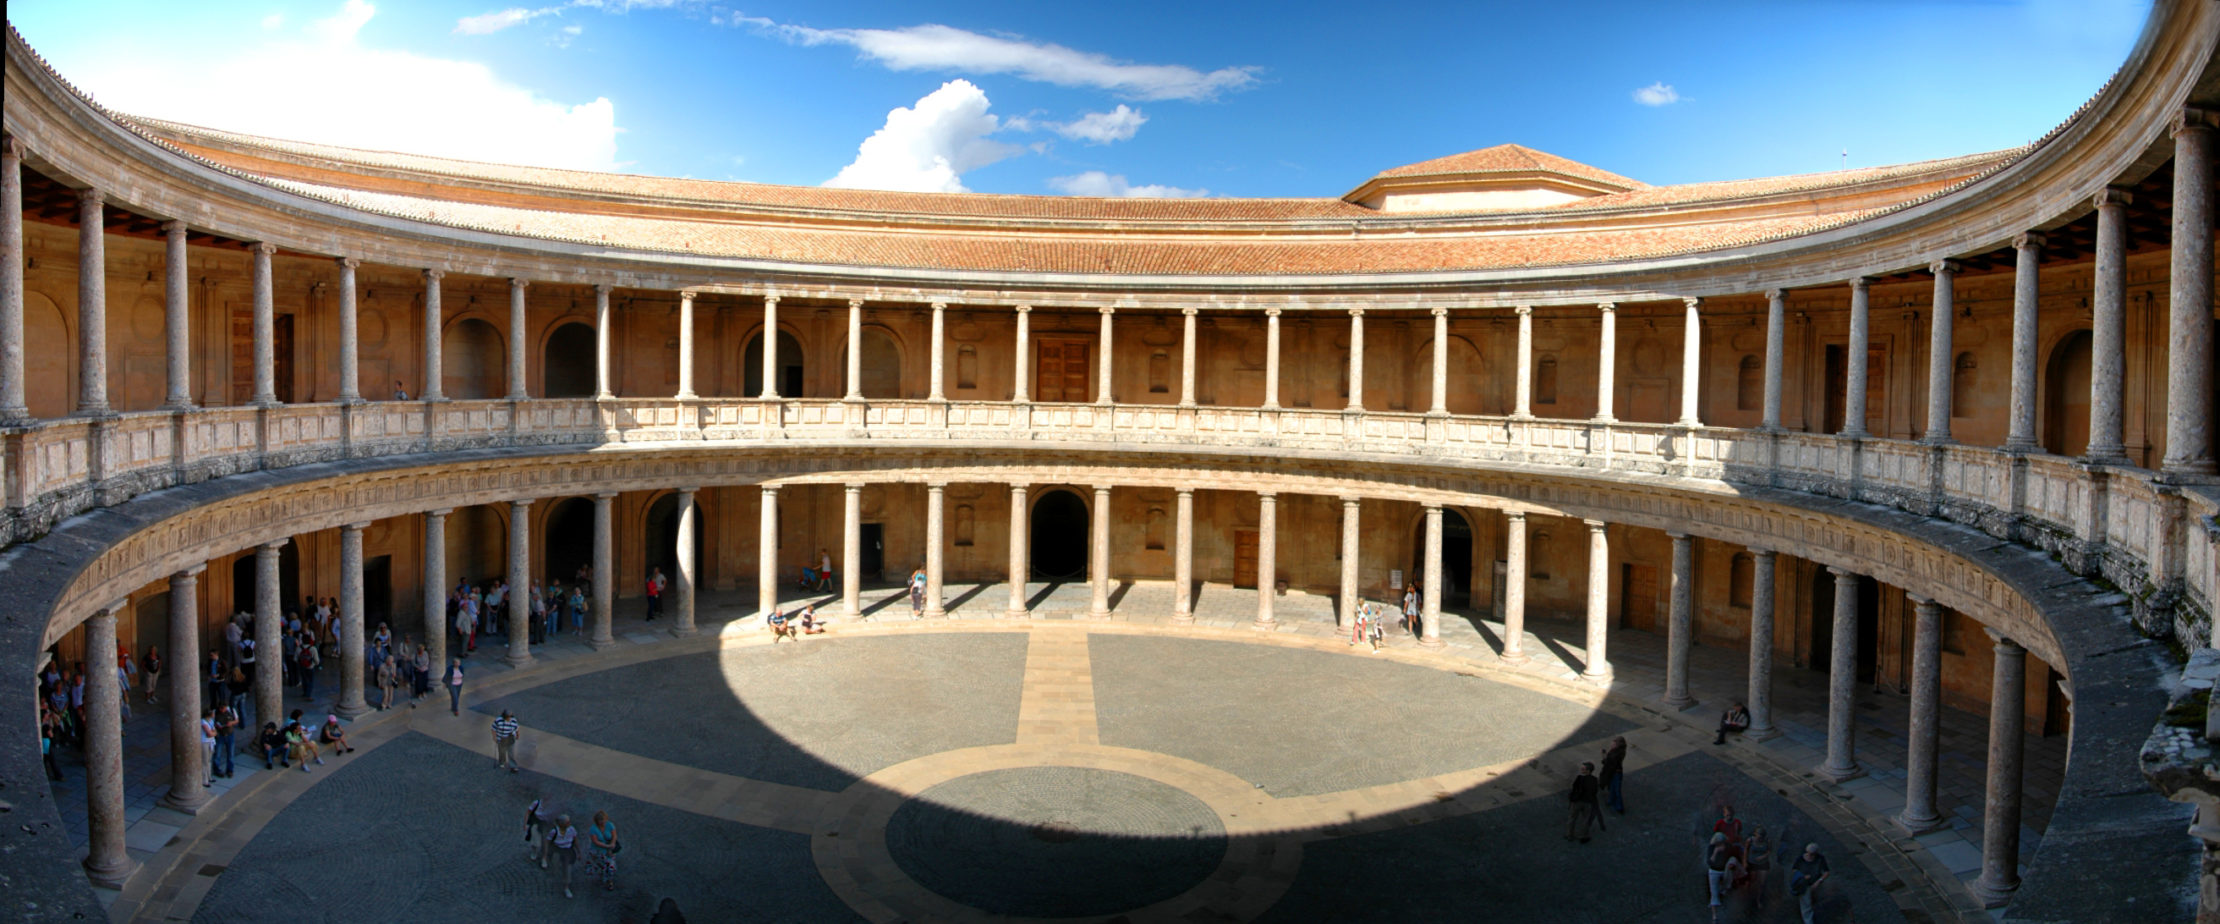 Patio circular del Palacio de Carlos V en la Alhambra